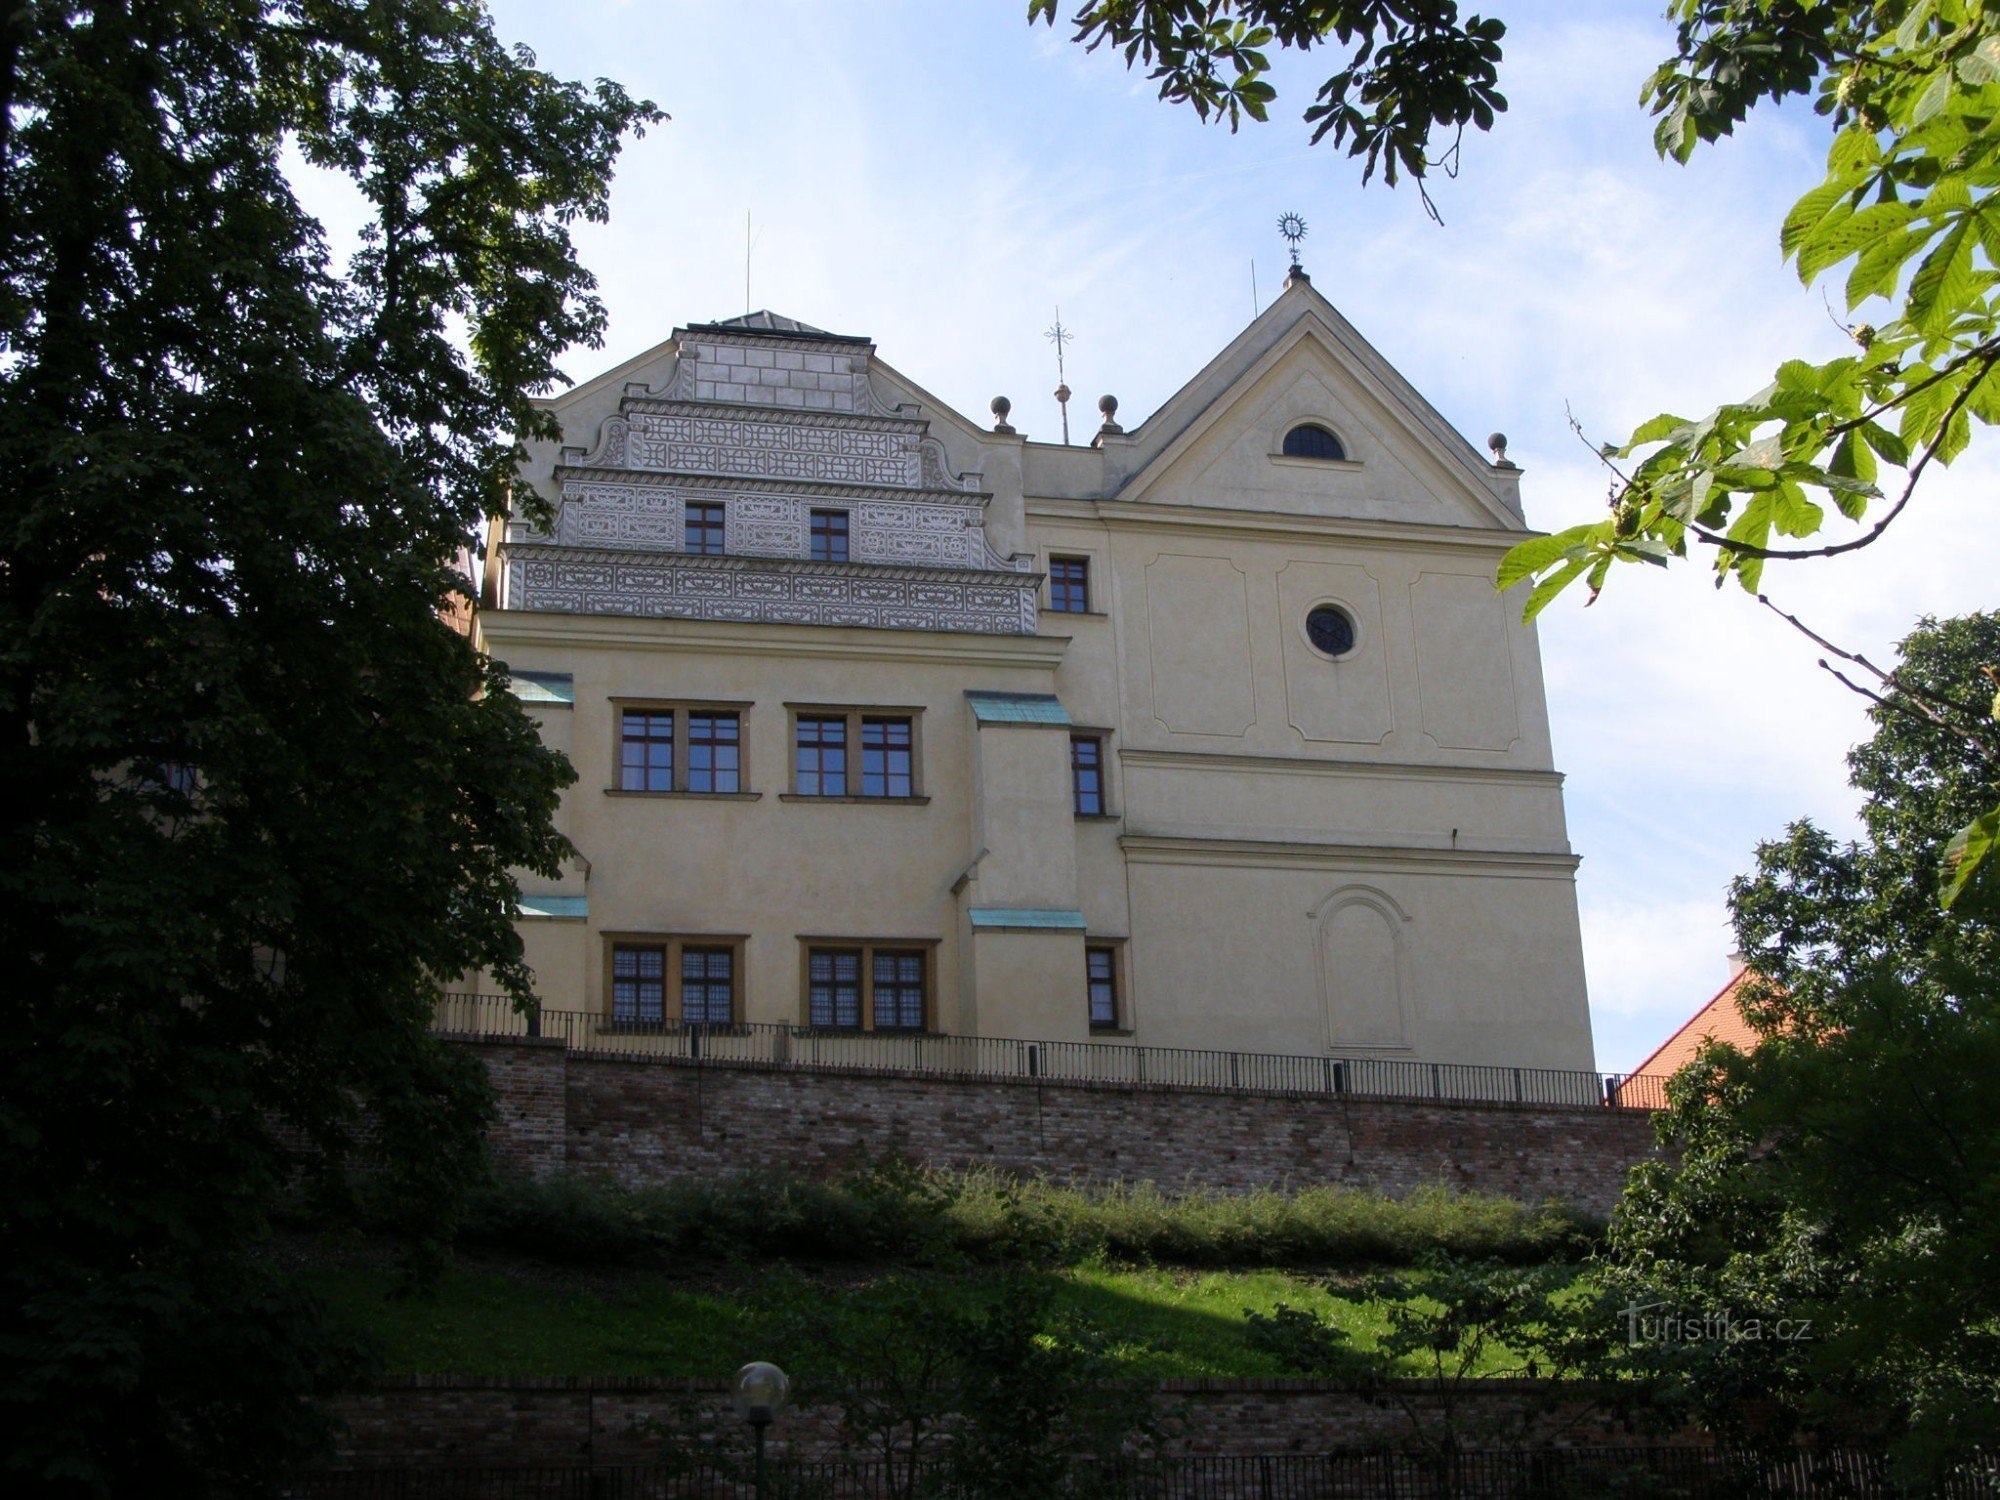 Hradec Králové - Municipal Music Hall